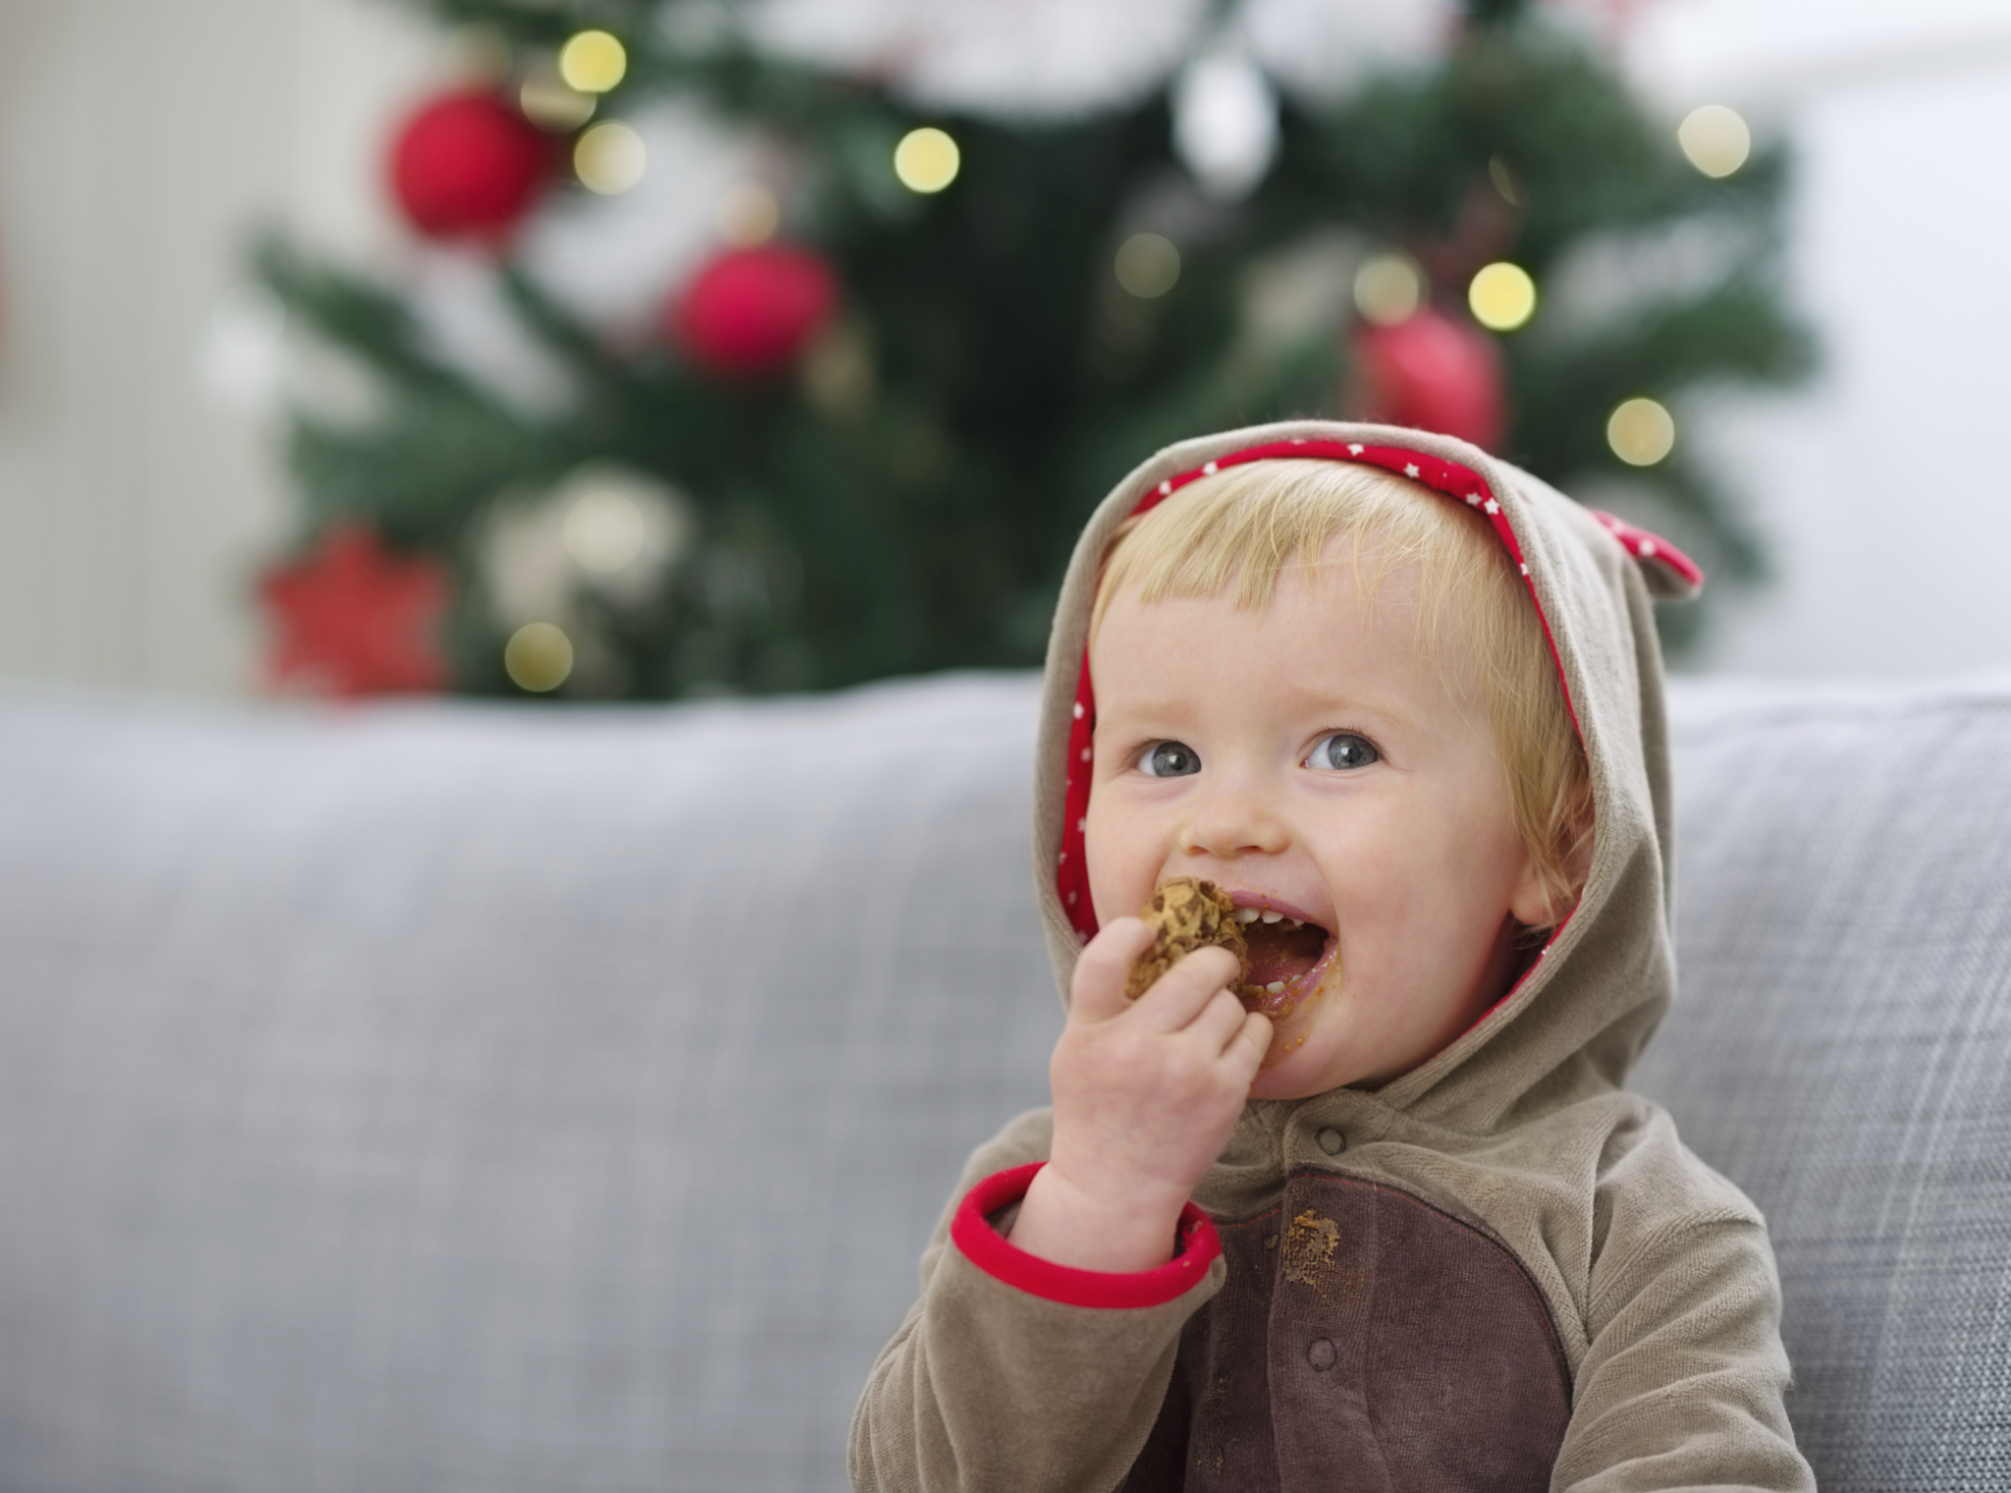 Ceia de Natal: a alimentação do bebê em época de festas 